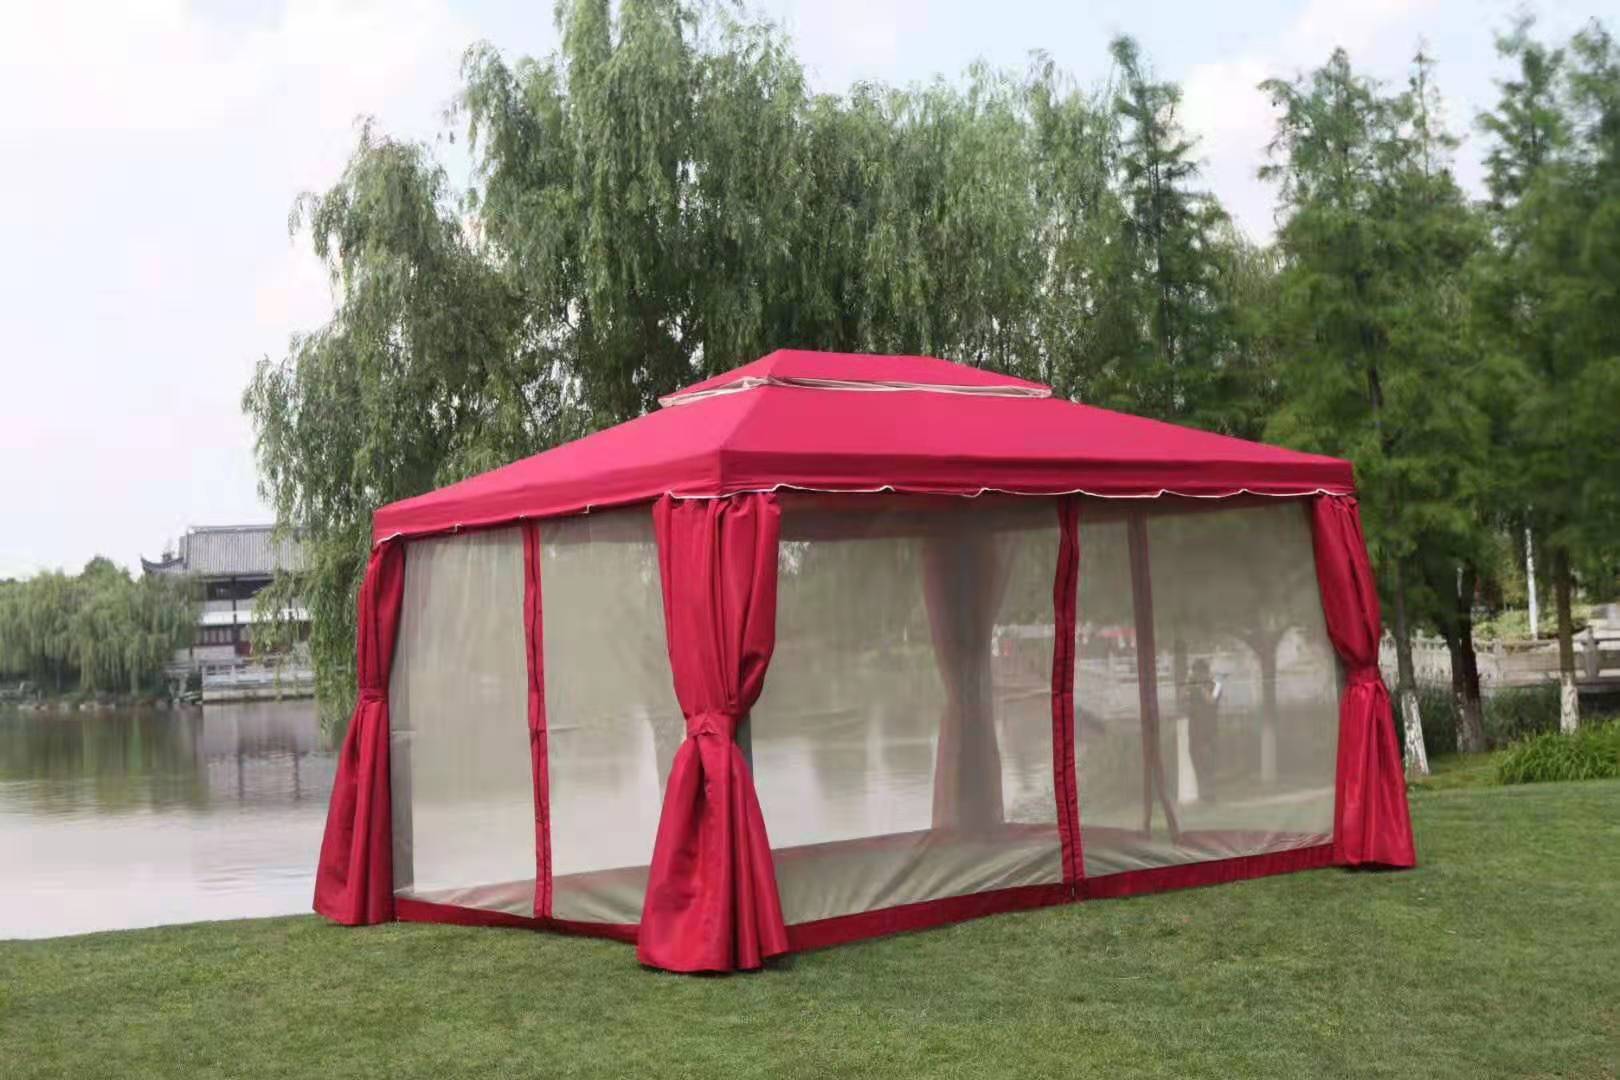 昆明罗马篷定制|四角尖顶篷订做|遮阳帐篷安装|推拉帐篷定制|太阳伞哪里好